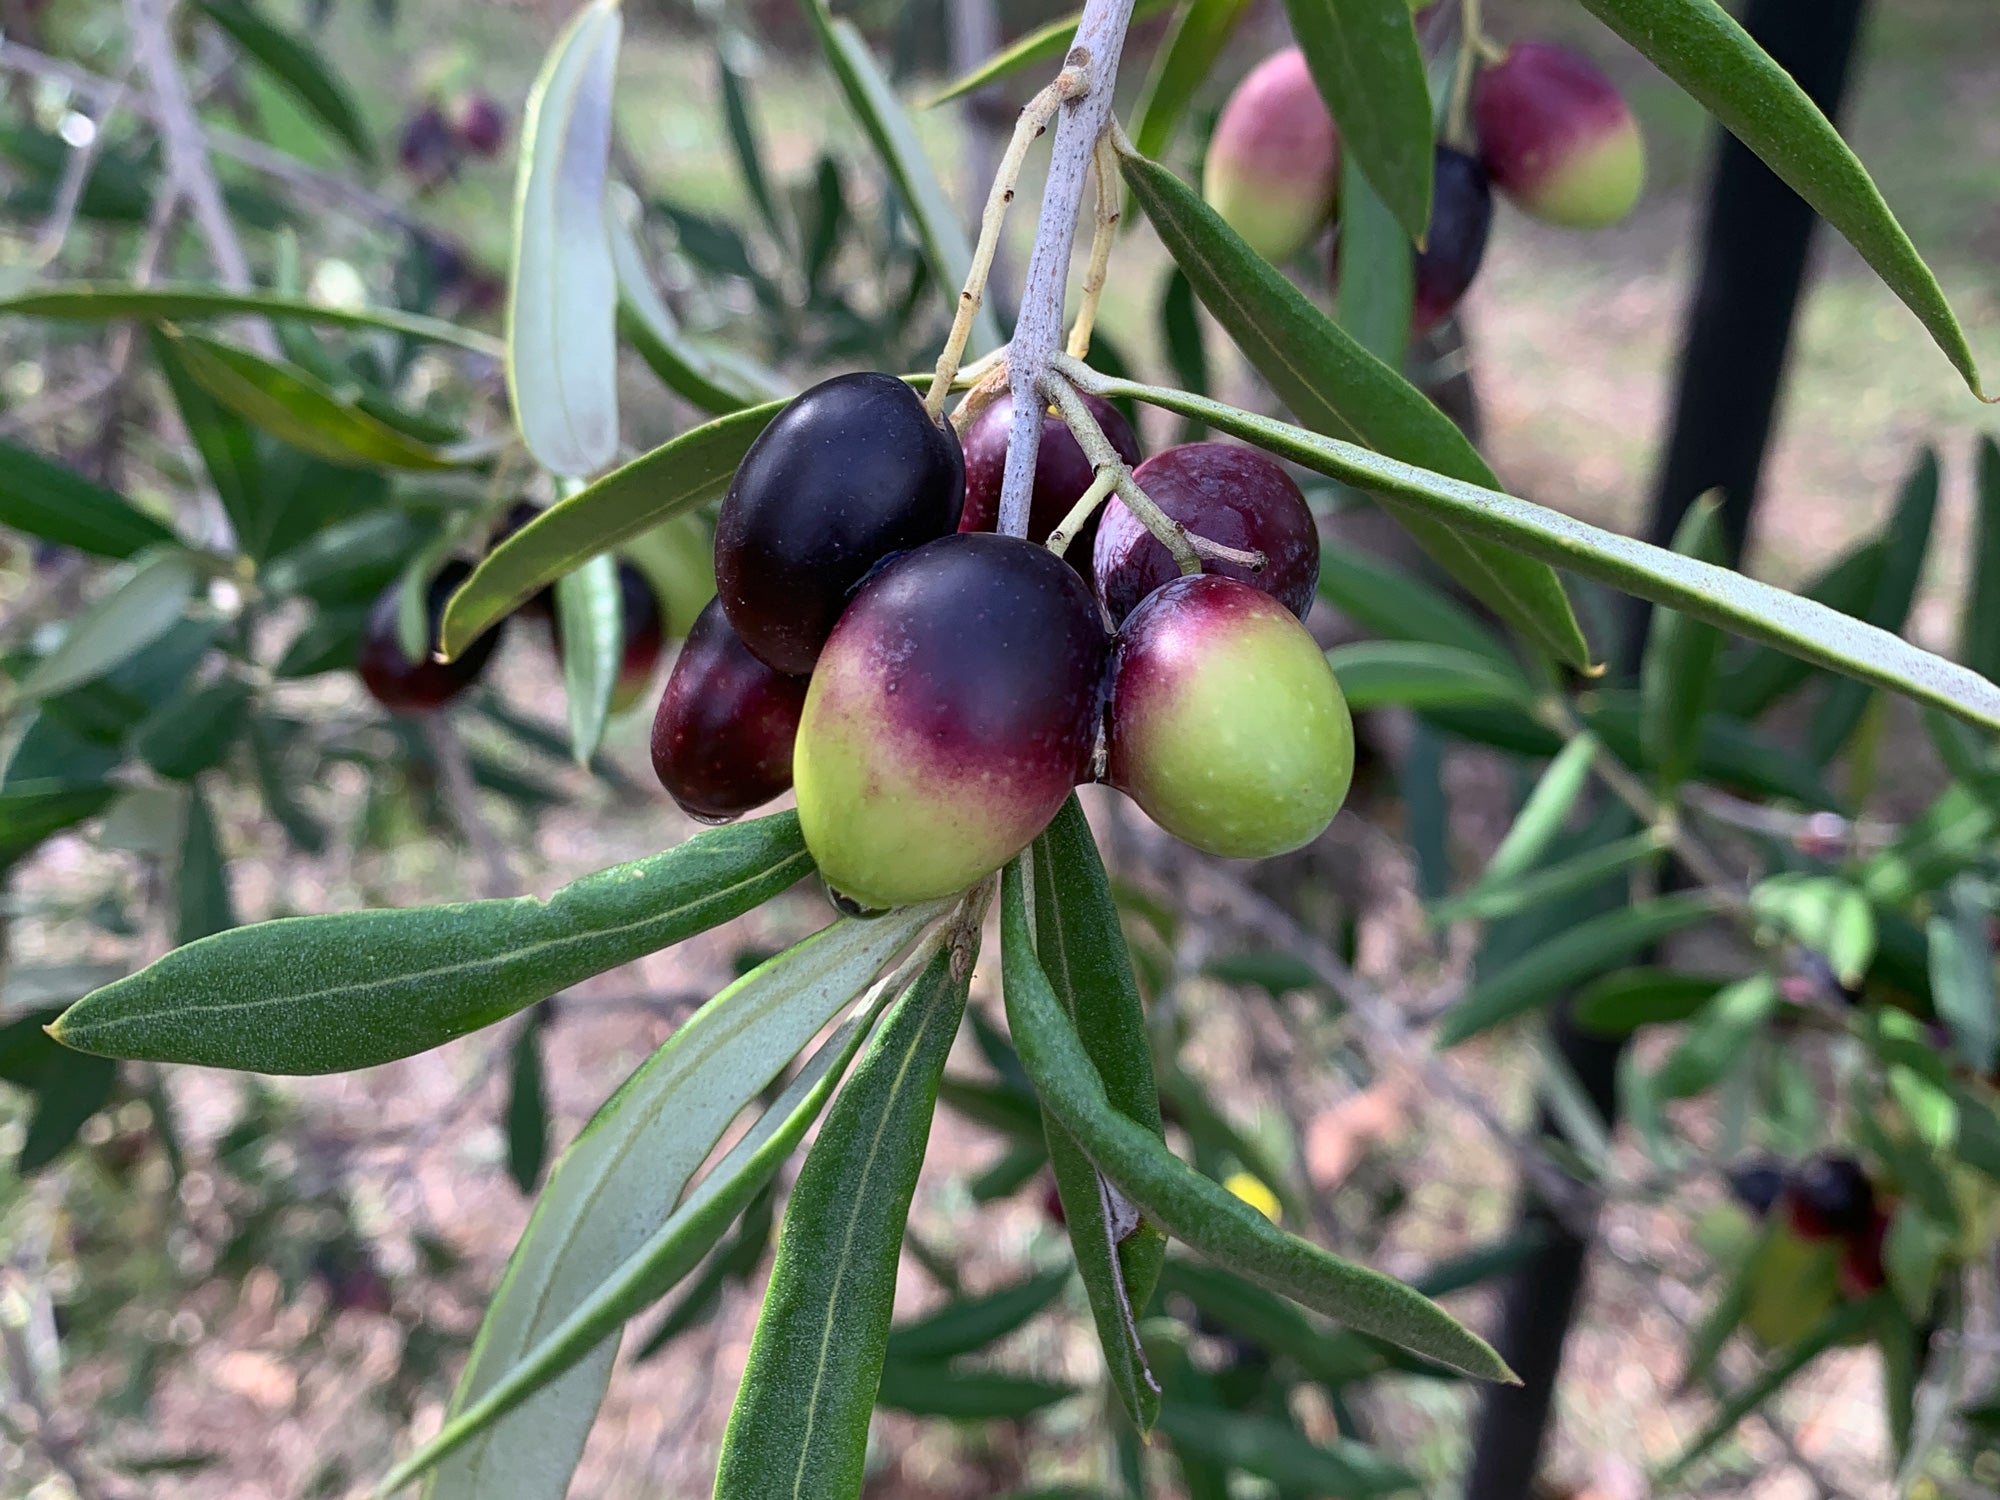 Azeite de oliva extra virgem: propriedades e benefícios desse elixir para a saúde